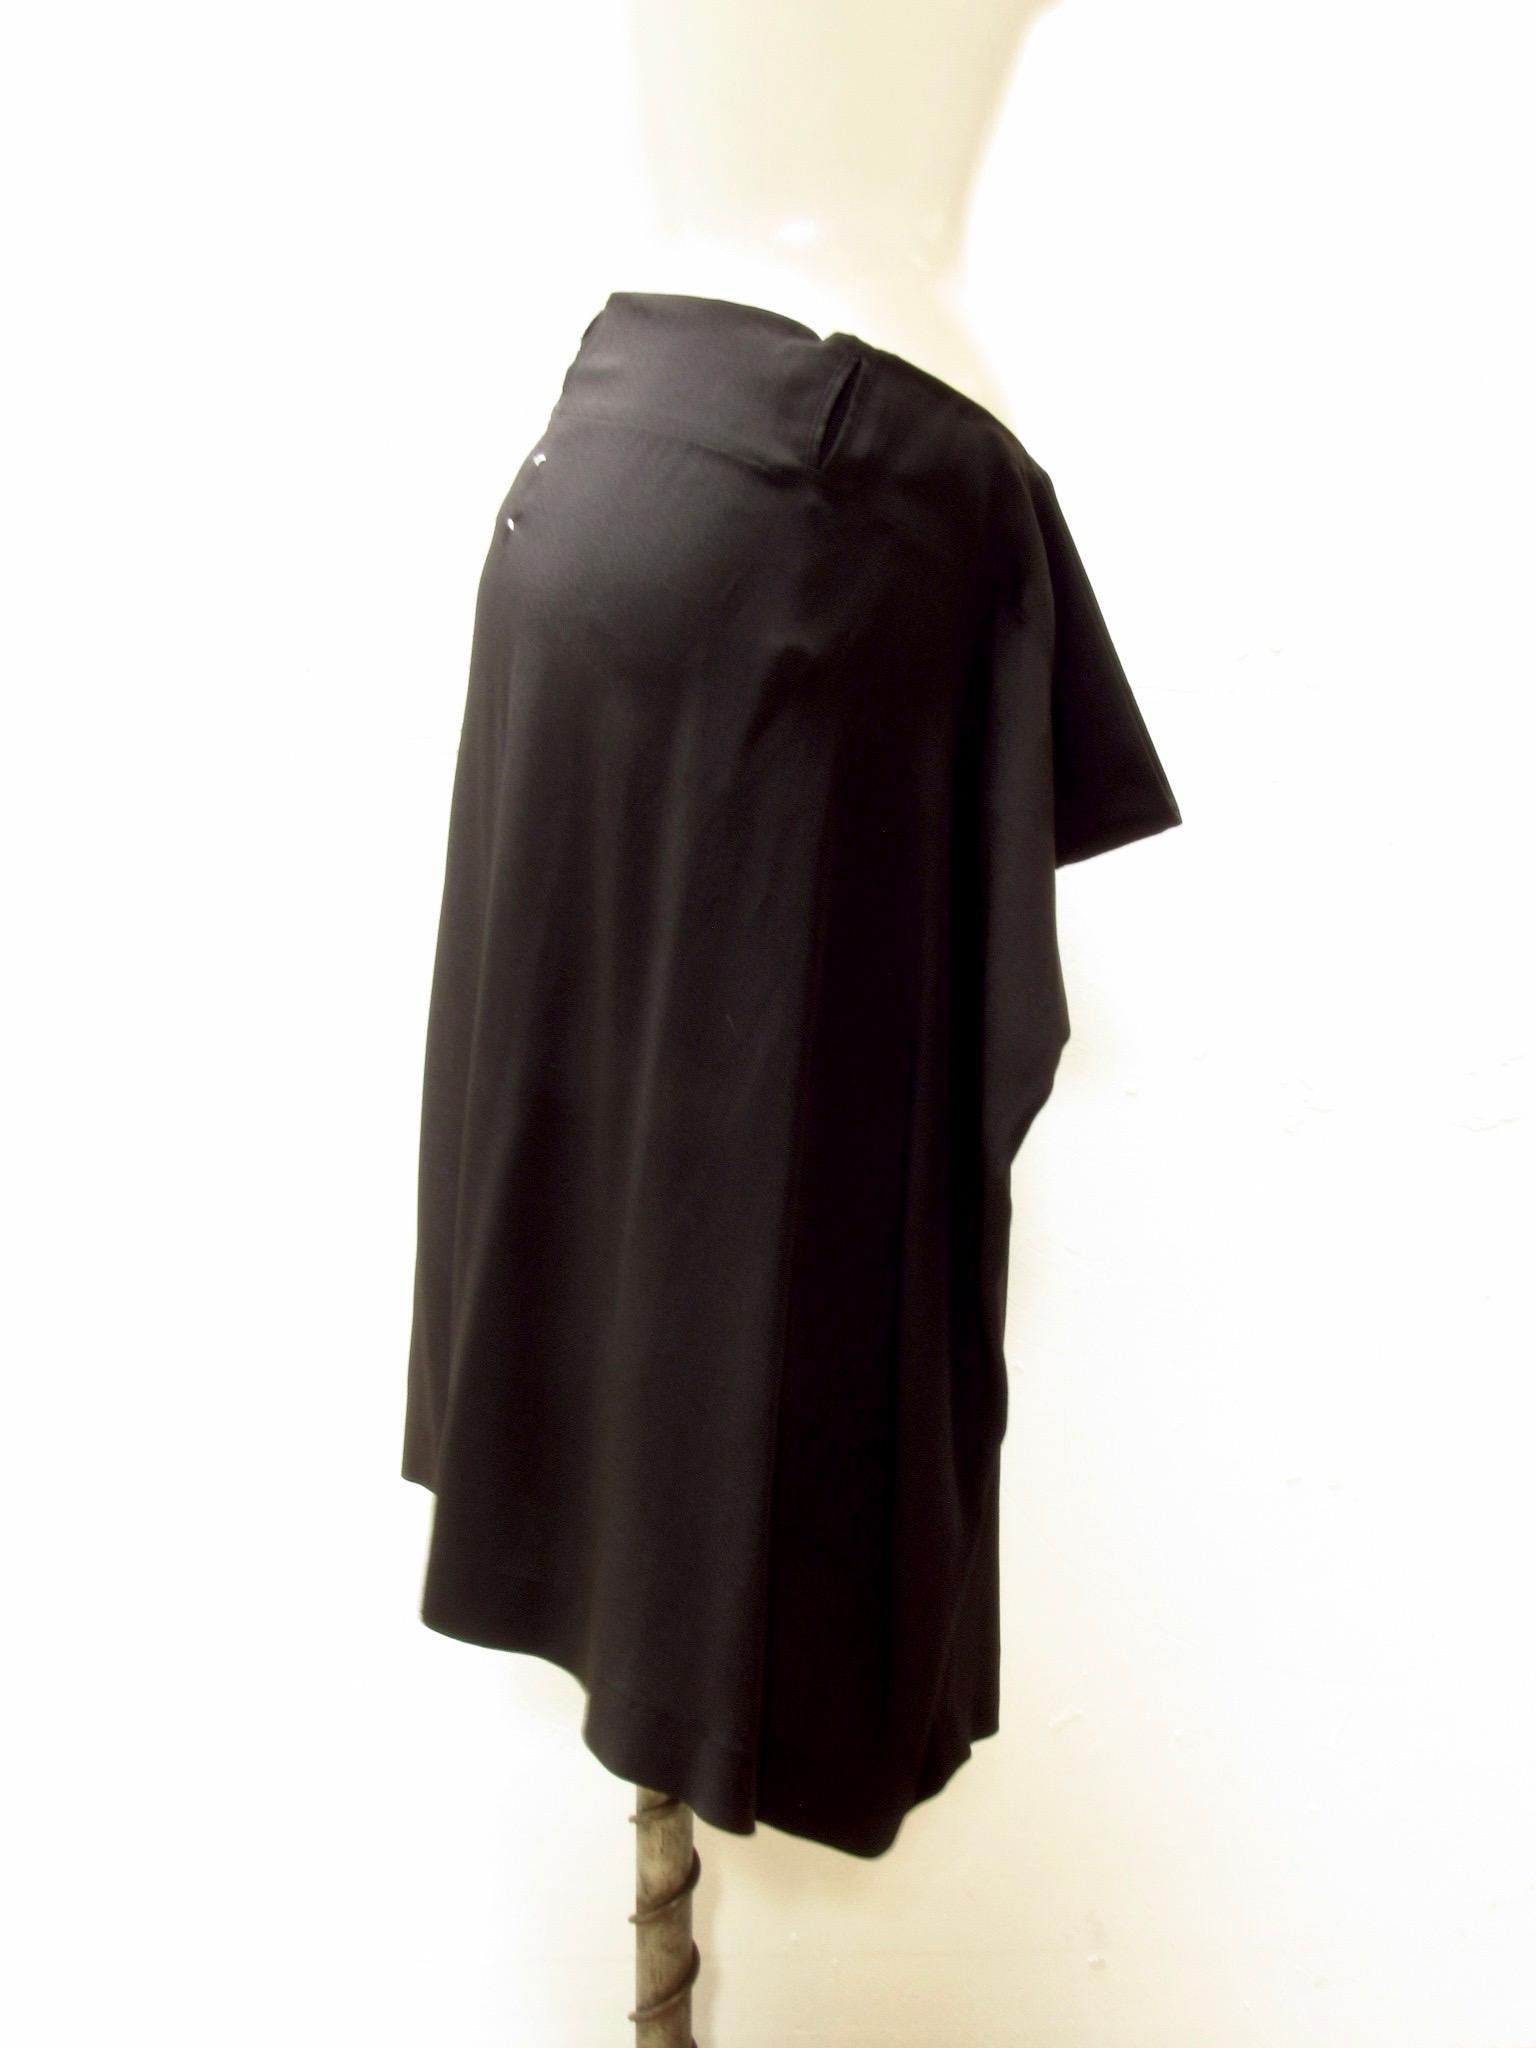 black draped skirt